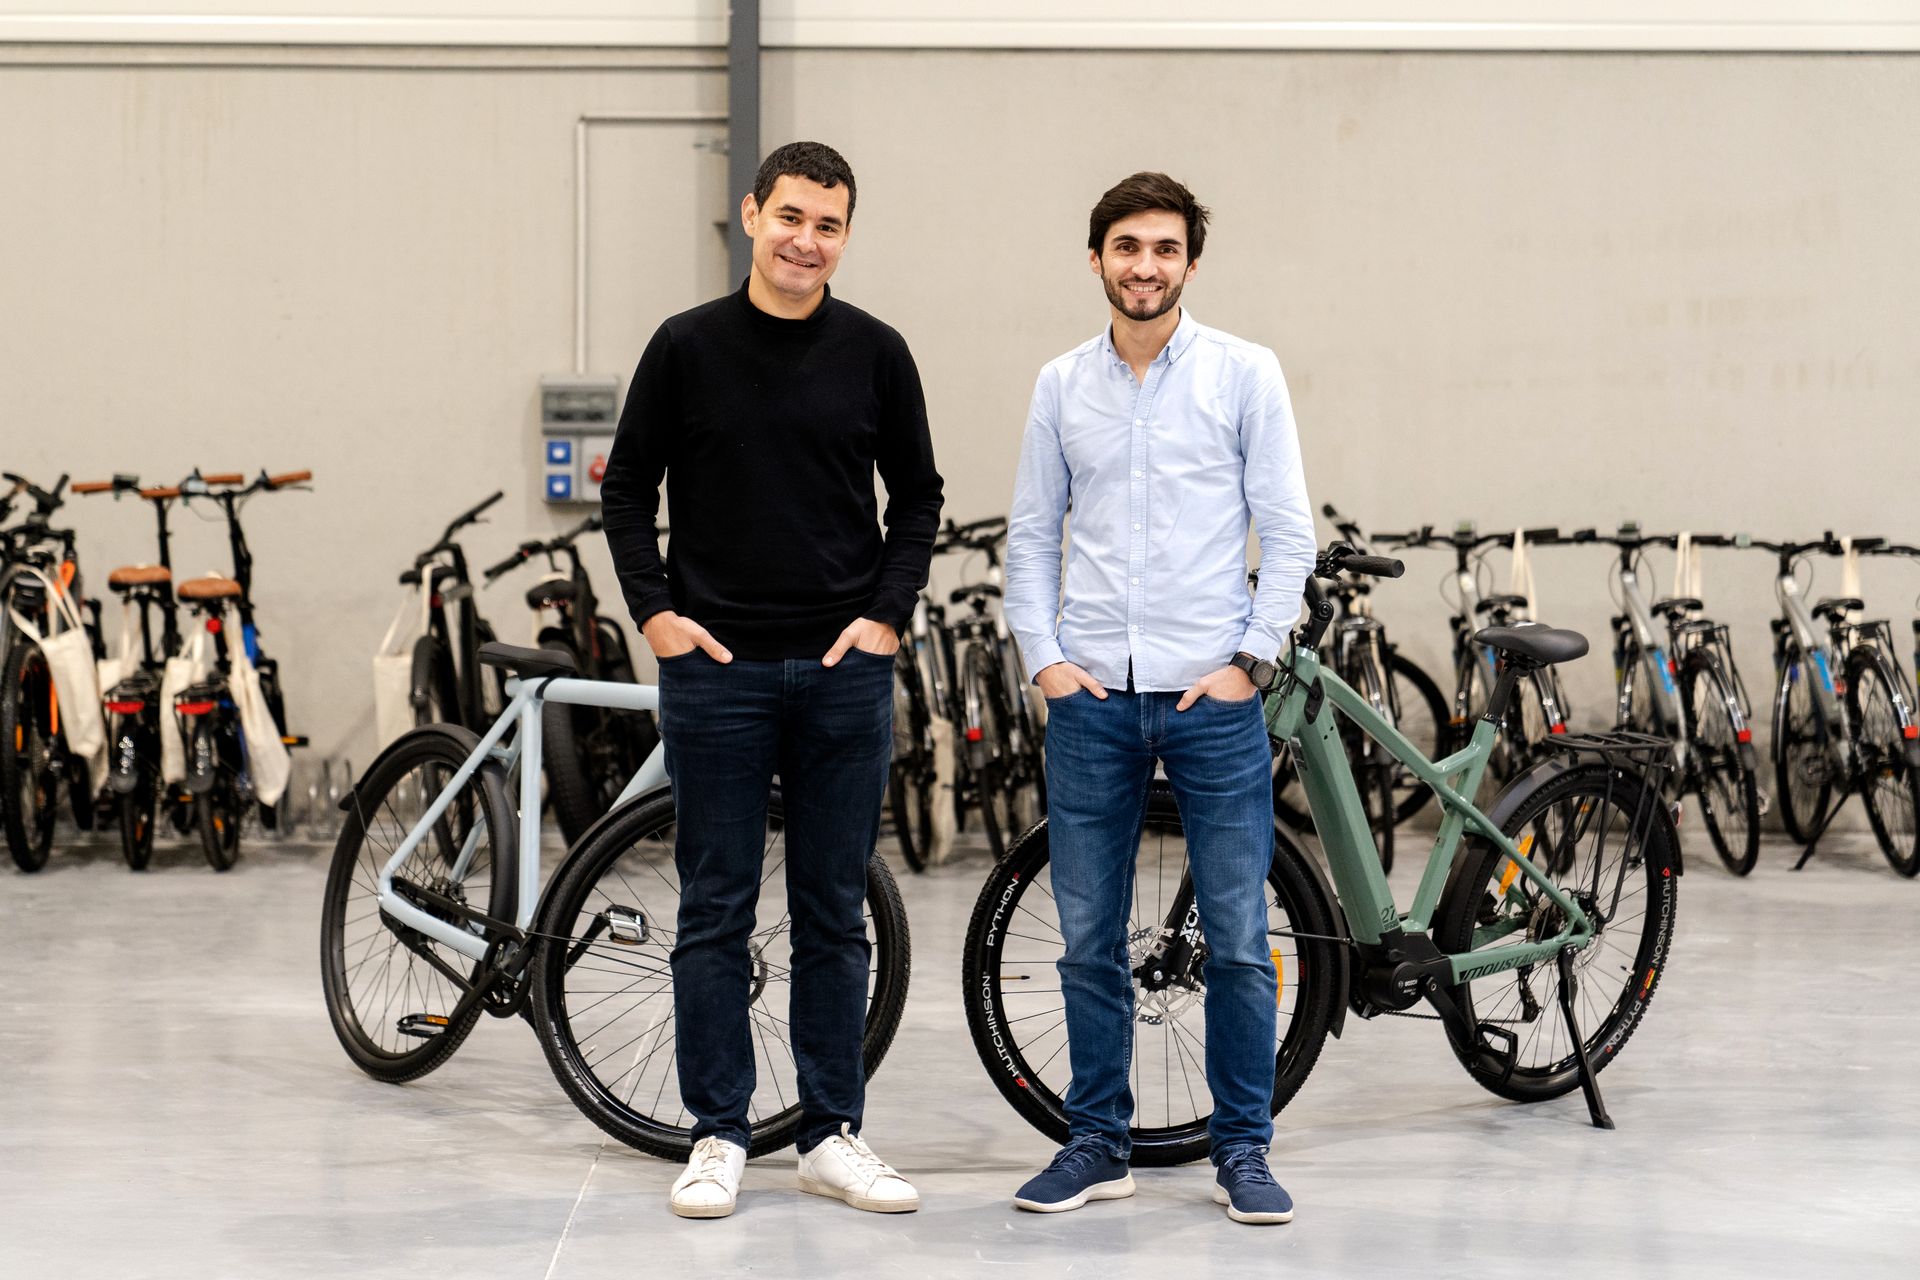 Le boom des ventes de vélos électriques se confirme en 2020 - Cleanrider